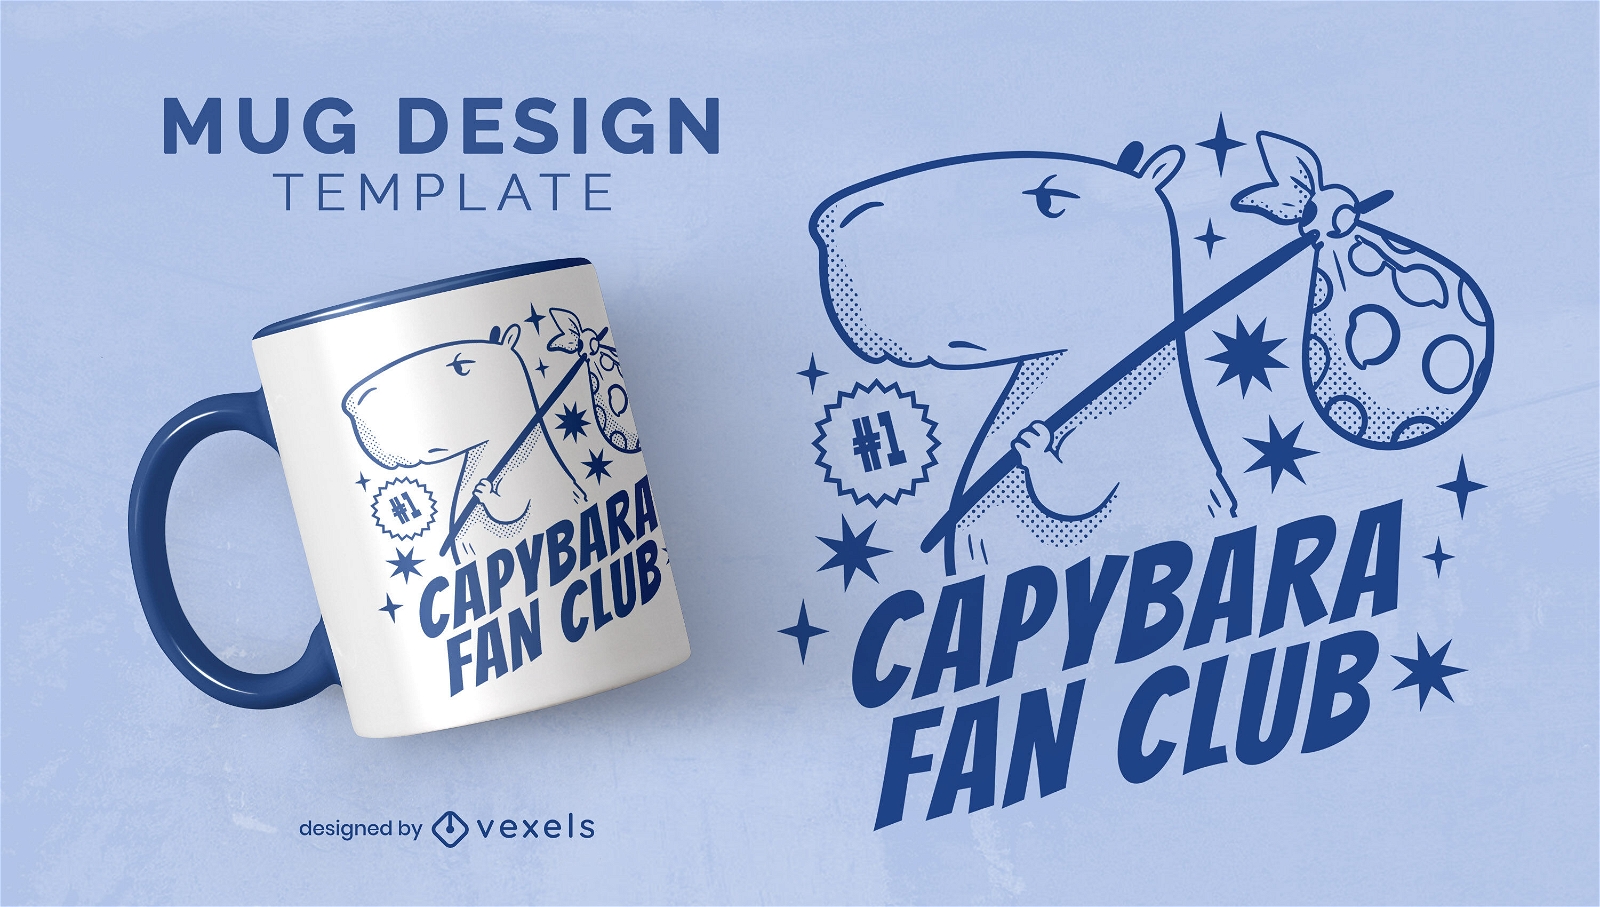 Capybara fan club mug design